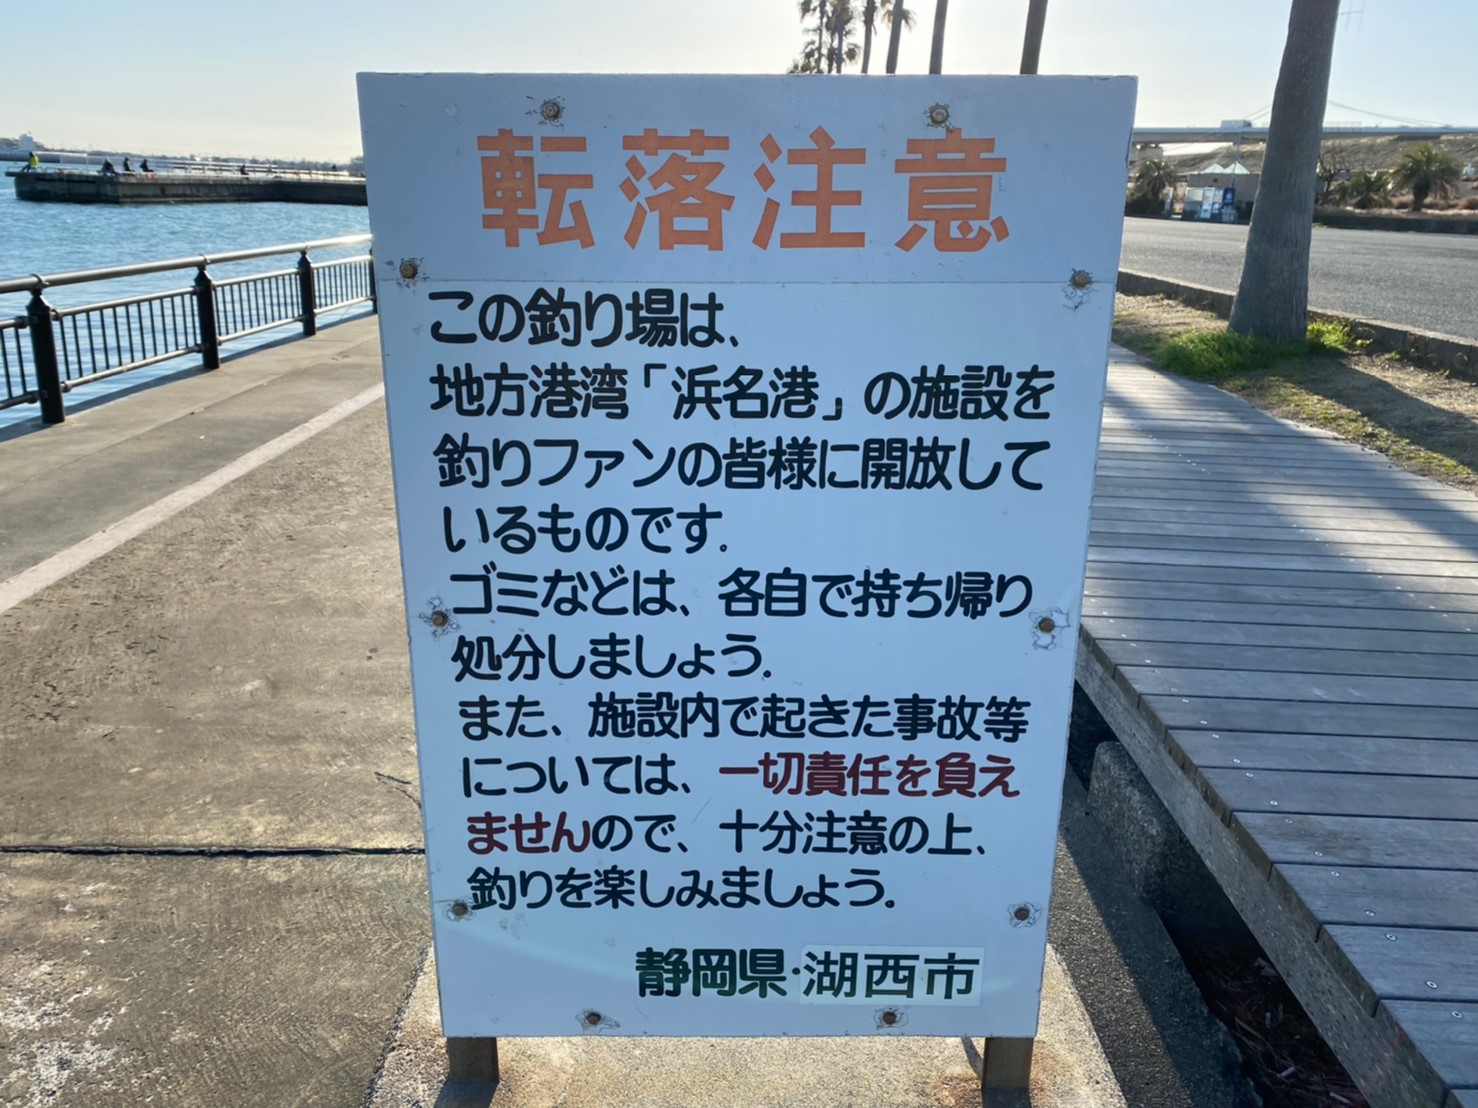 【浜名湖南部】『新居海釣公園』の釣り場ガイド